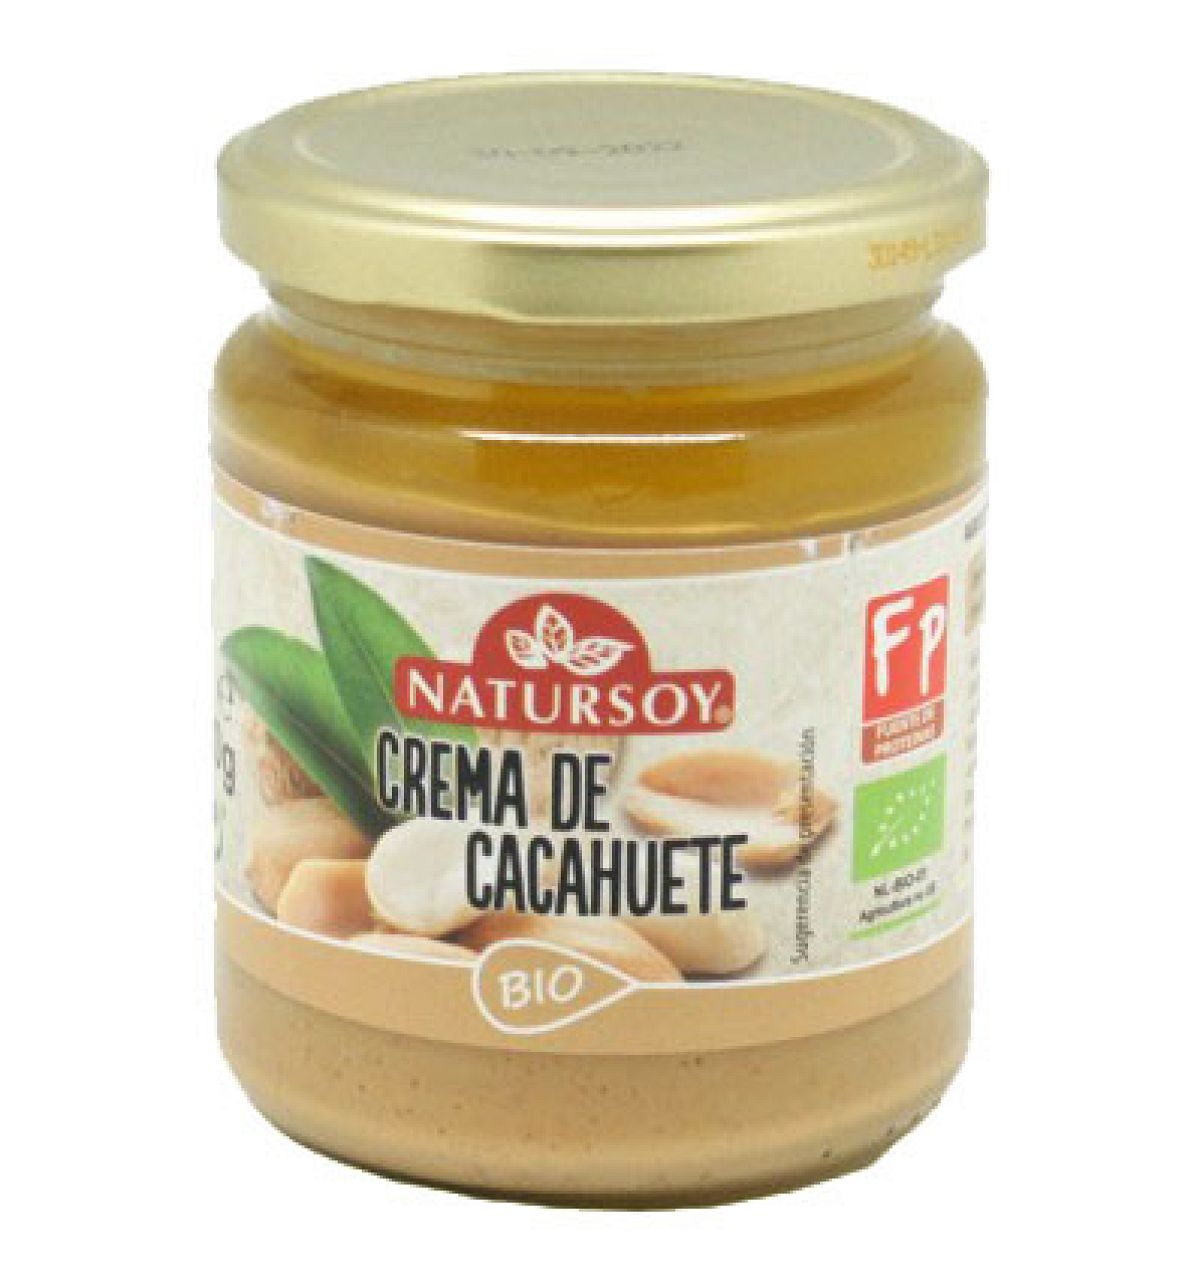 Natursoy - Crema de cacahuete 250gr